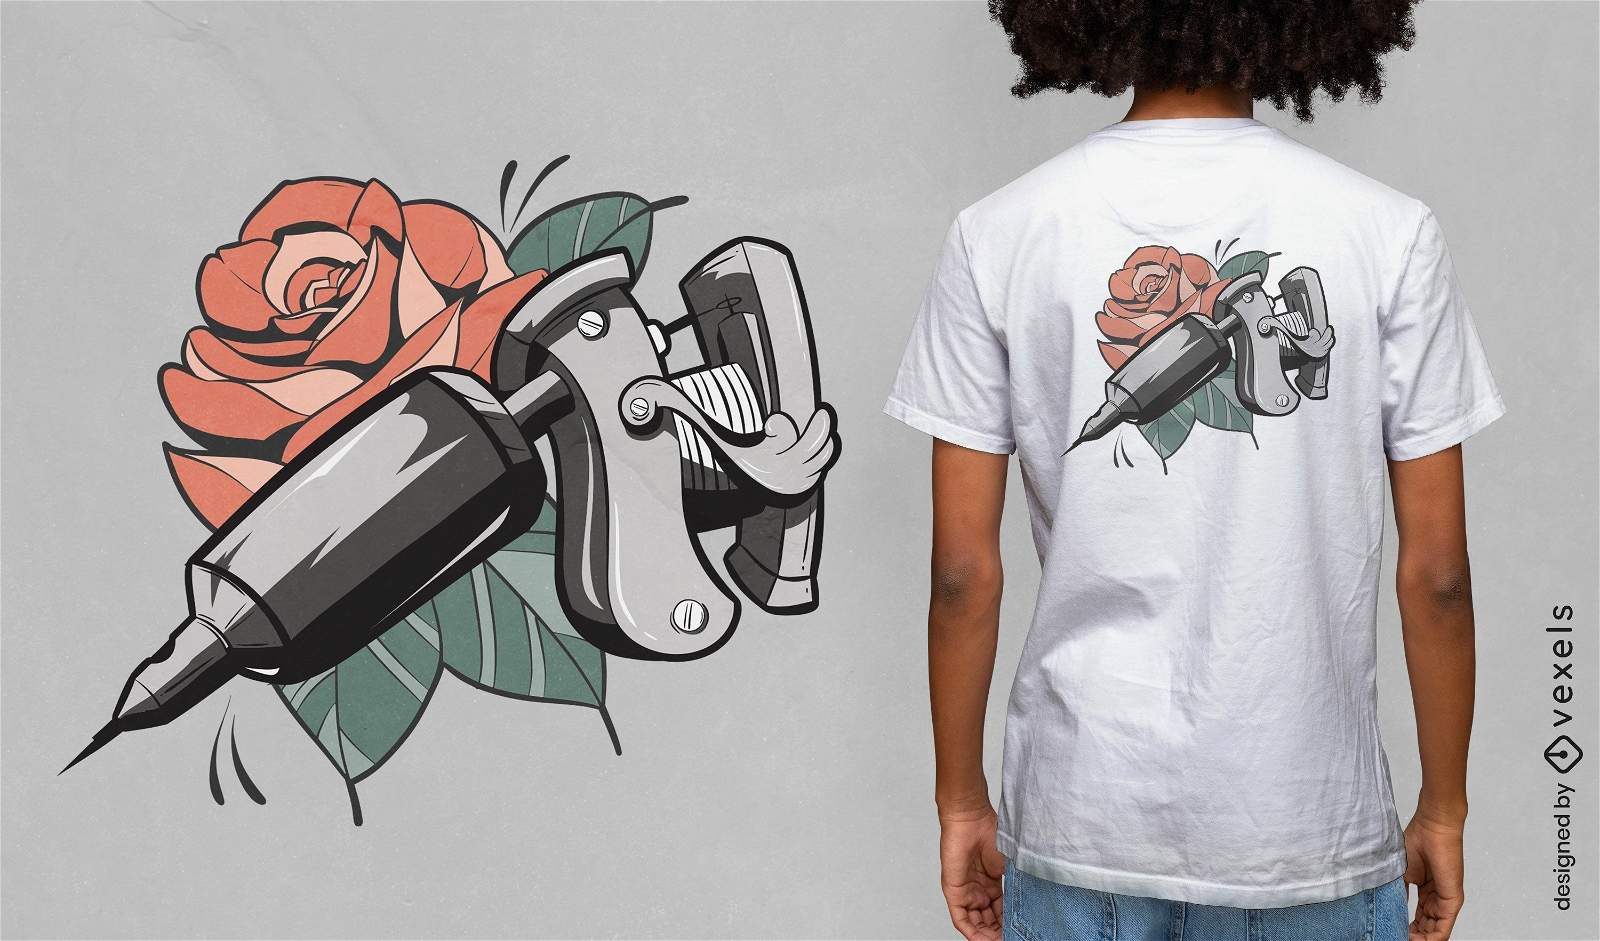 Tattoo gun and rose flower t-shirt design